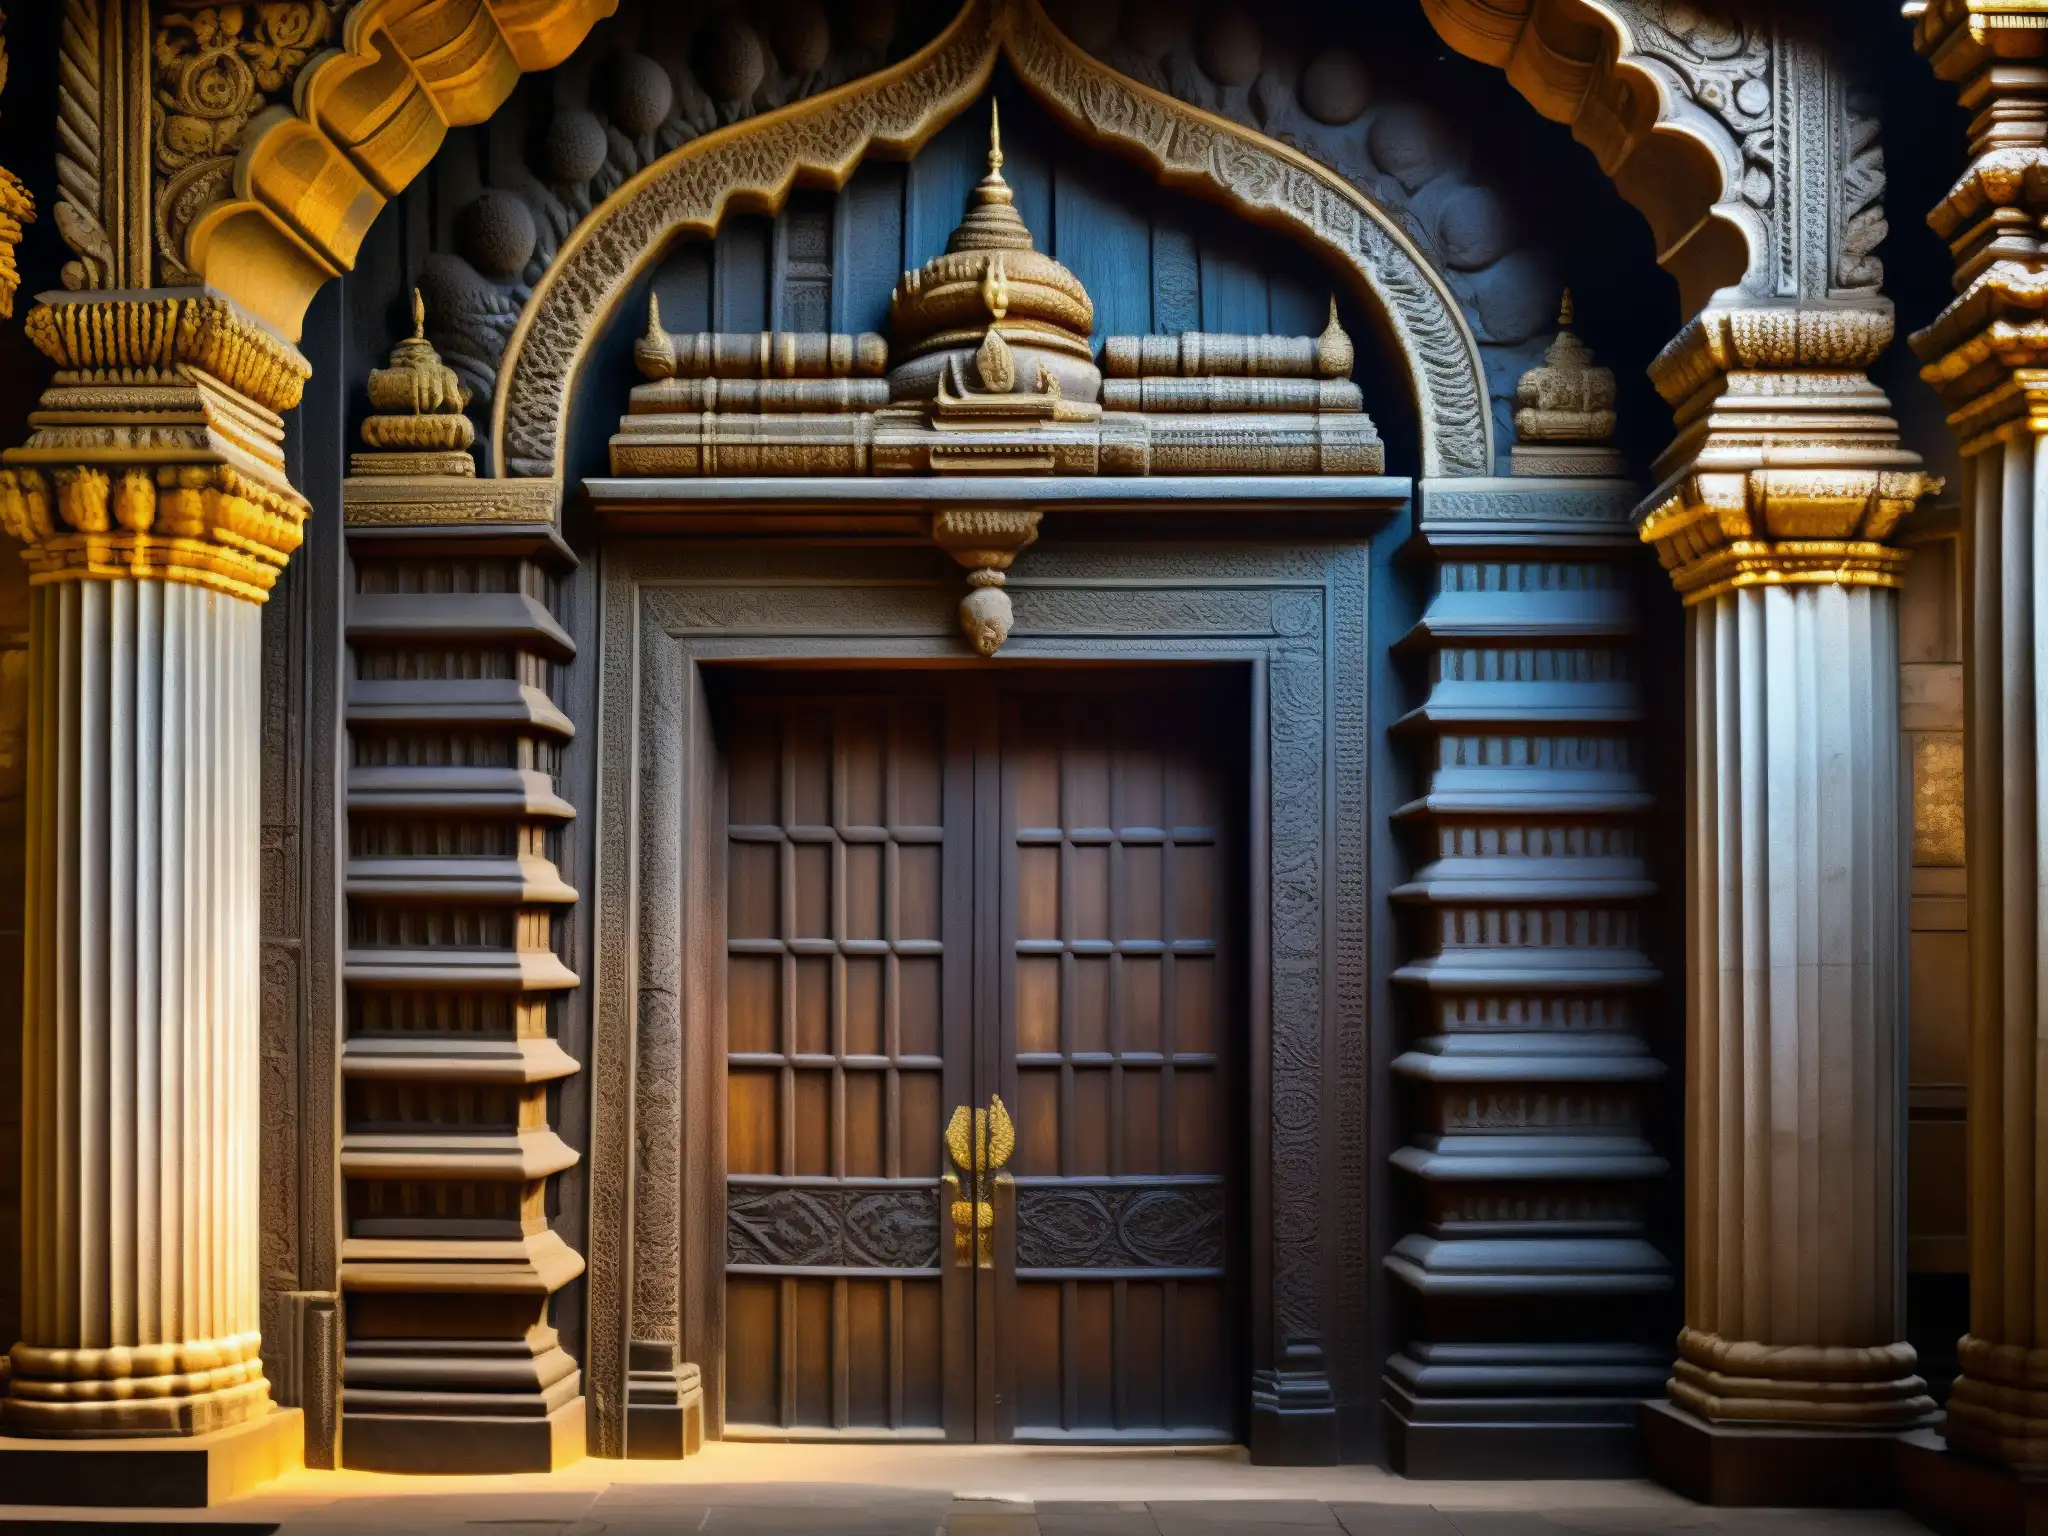 Explora los secretos del Guardián del Tesoro en el misterioso interior del templo Padmanabhaswamy, con intrincadas puertas y grabados antiguos